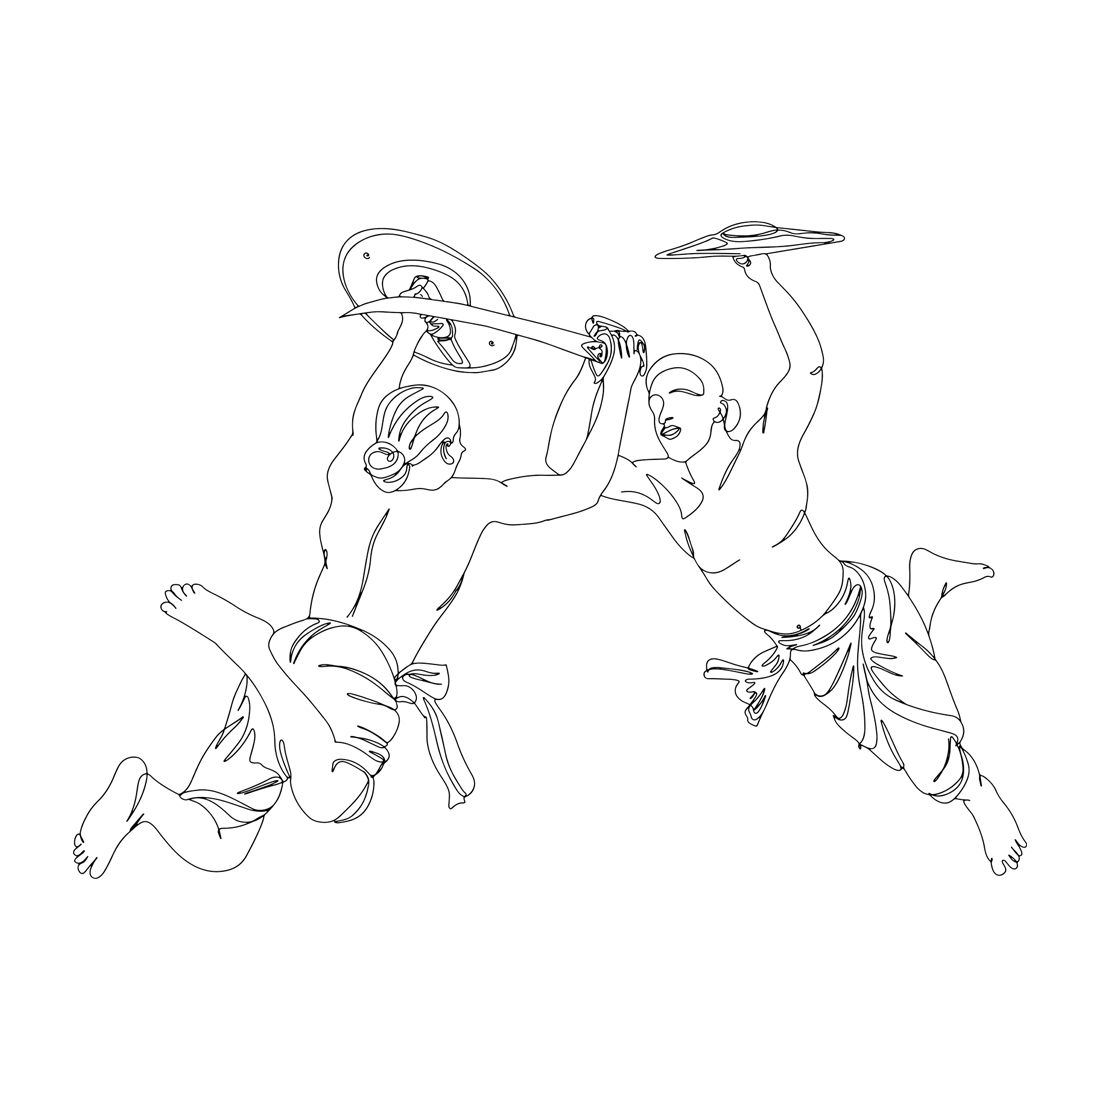 Dynamic Kalarippayat Warriors: One-Line Illustration of Ancient Combat, Tradition Meets Art: Kalarippayat Swordfight in Indian Martial Arts, Kalarippayat Swordfight Sketch preview image.